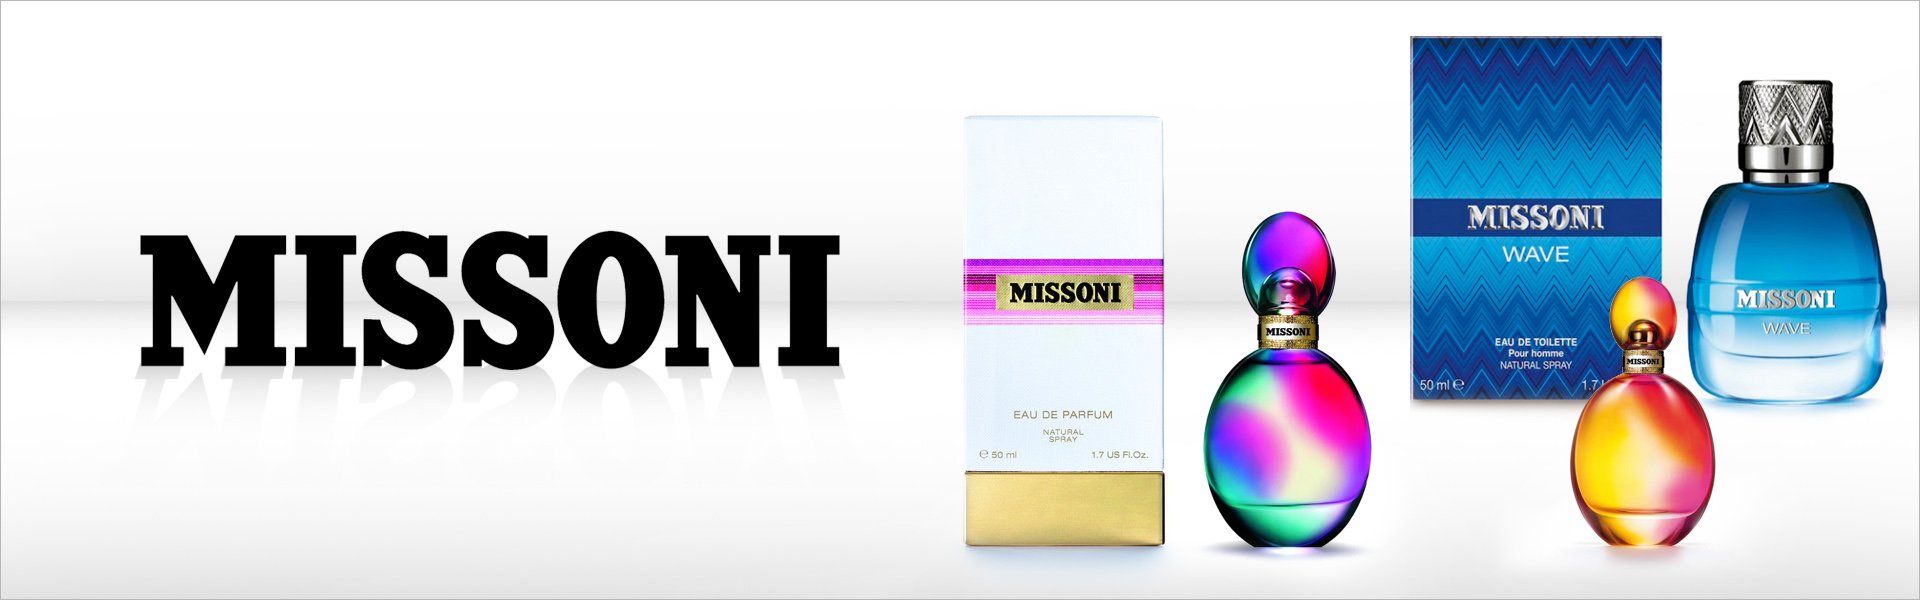 Женская парфюмерия Missoni (50 ml) EDP Missoni